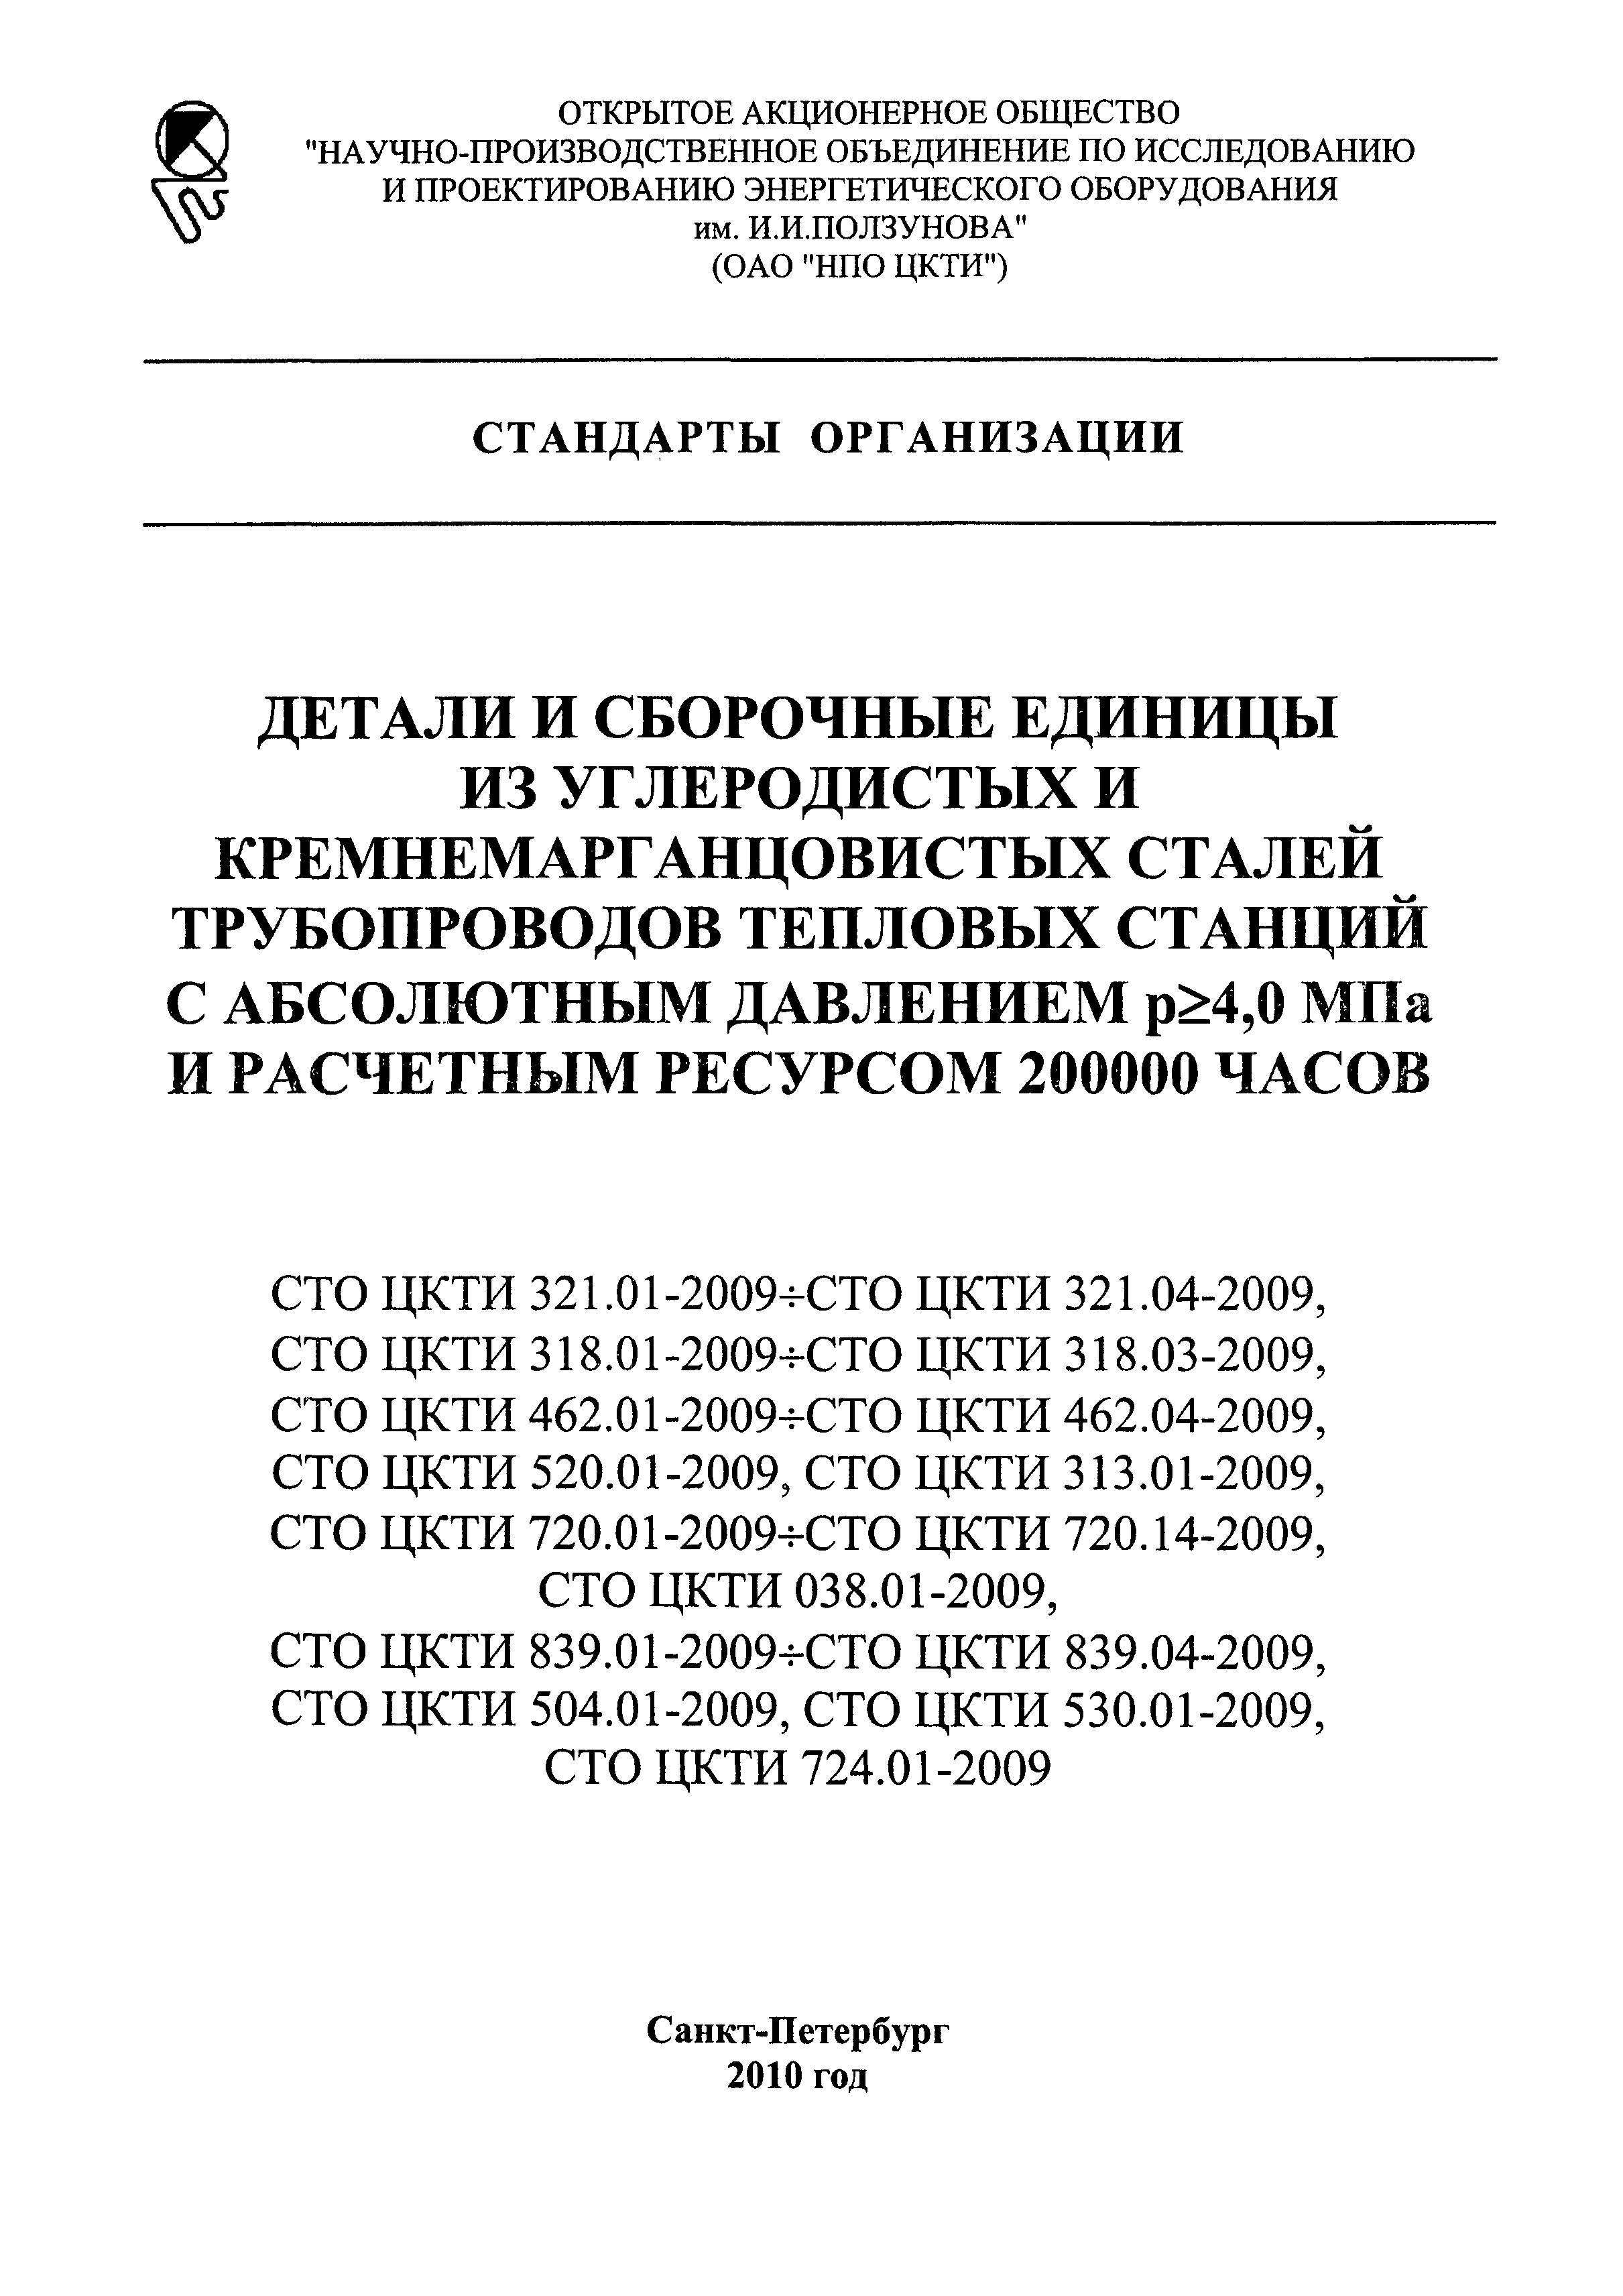 СТО ЦКТИ 720.01-2009